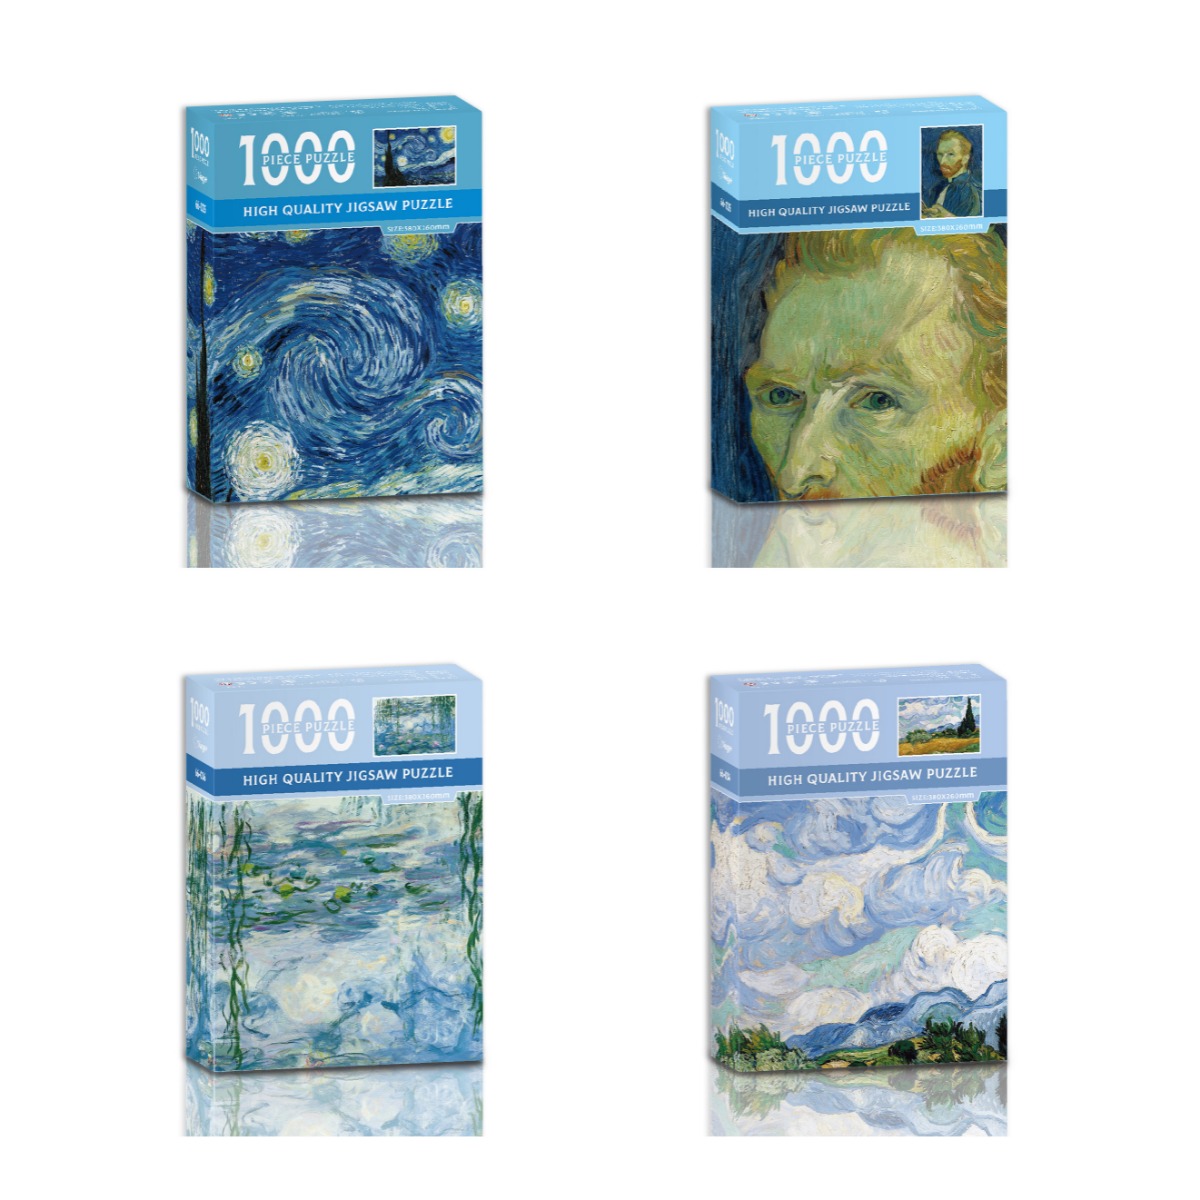 Rompecabezas de 3000 piezas, La noche estrellada de Van Gogh, rompecabezas  para adultos con presión reducida, juguete de aprendizaje y educación